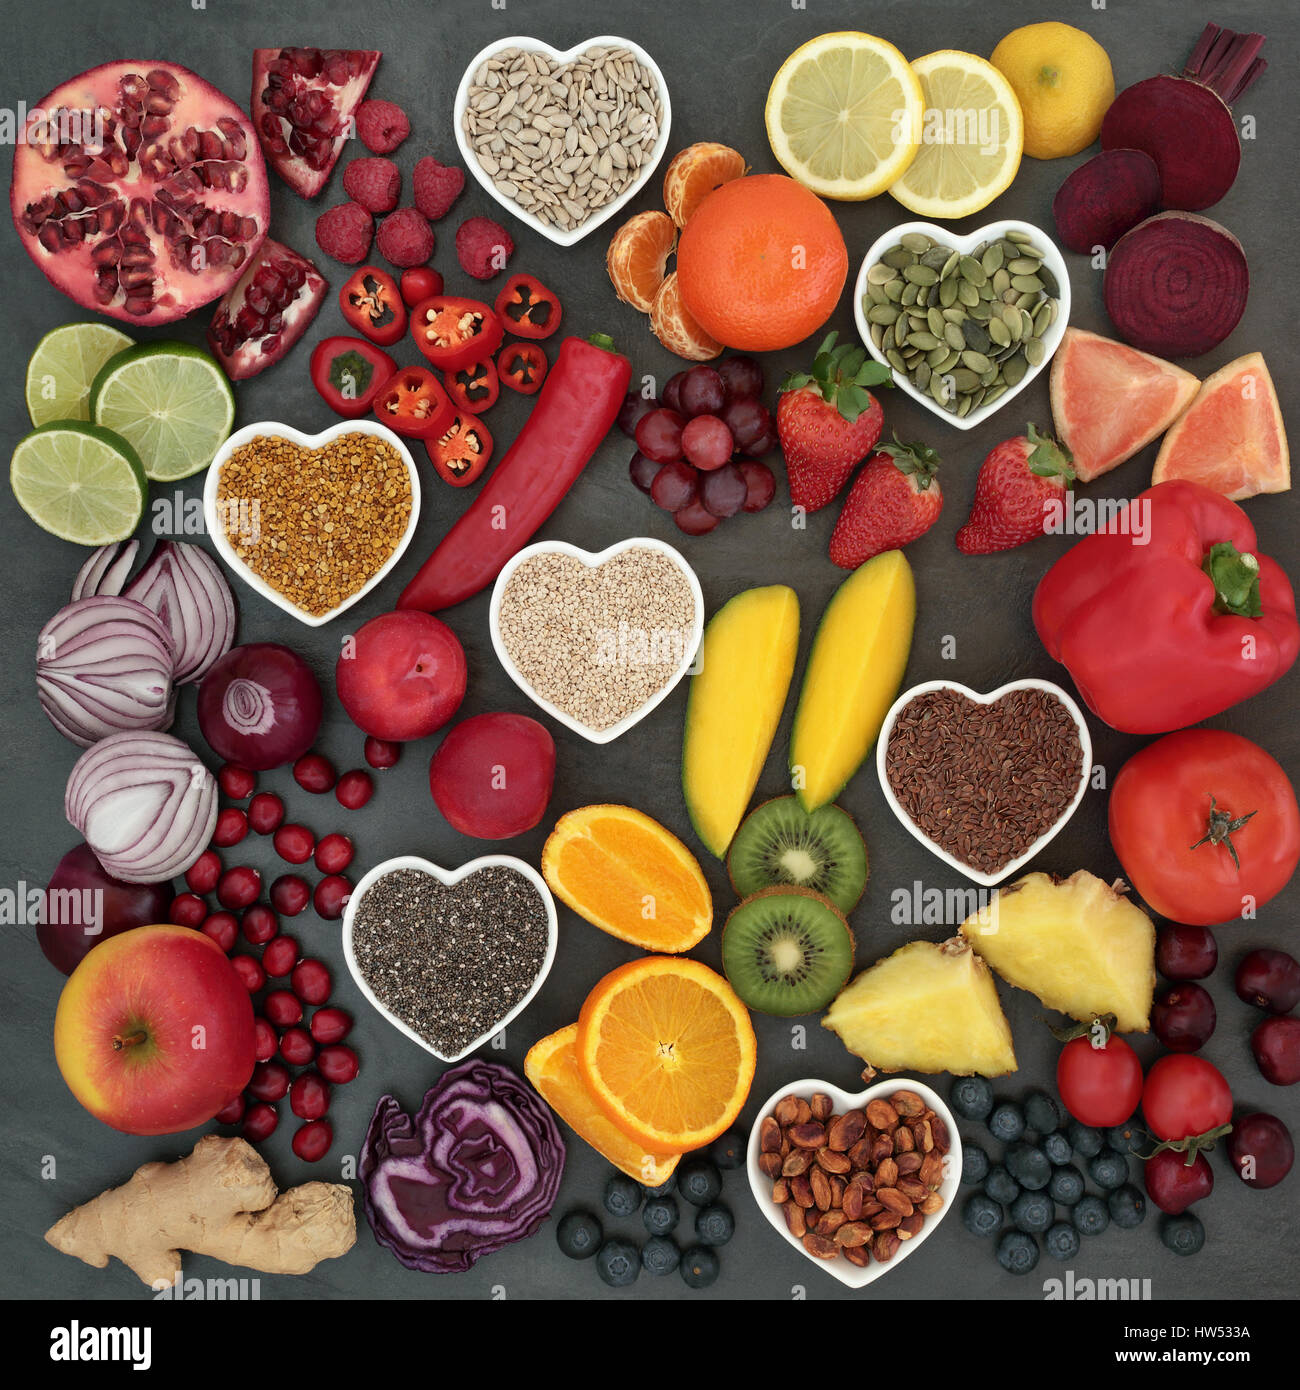 Il paleolitico il cibo della dieta di frutta fresca, verdura, frutta secca e Semi su sfondo di ardesia. Elevata di antiossidanti, vitamine, antocianine e fibra dietetica. Foto Stock